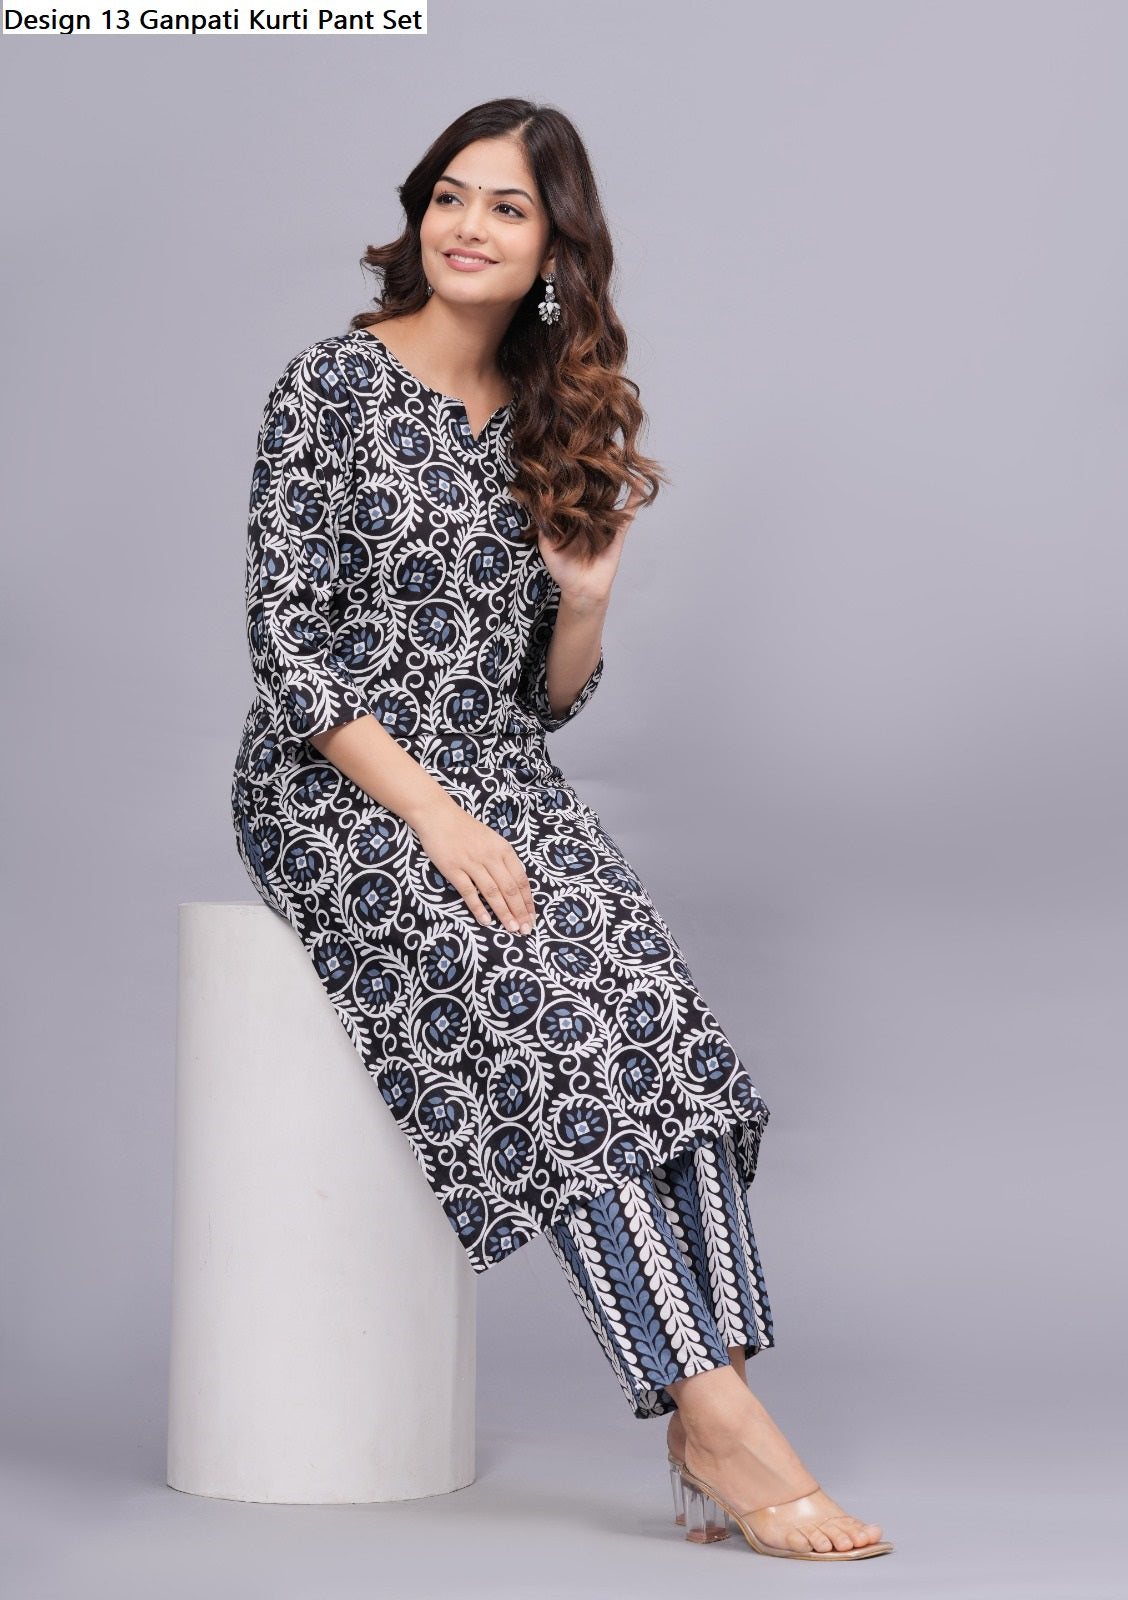 Cotton Ladies Designer Kurti Pant Set, Machine Wash, Size: M-xxl at Rs  450/piece in Jaipur